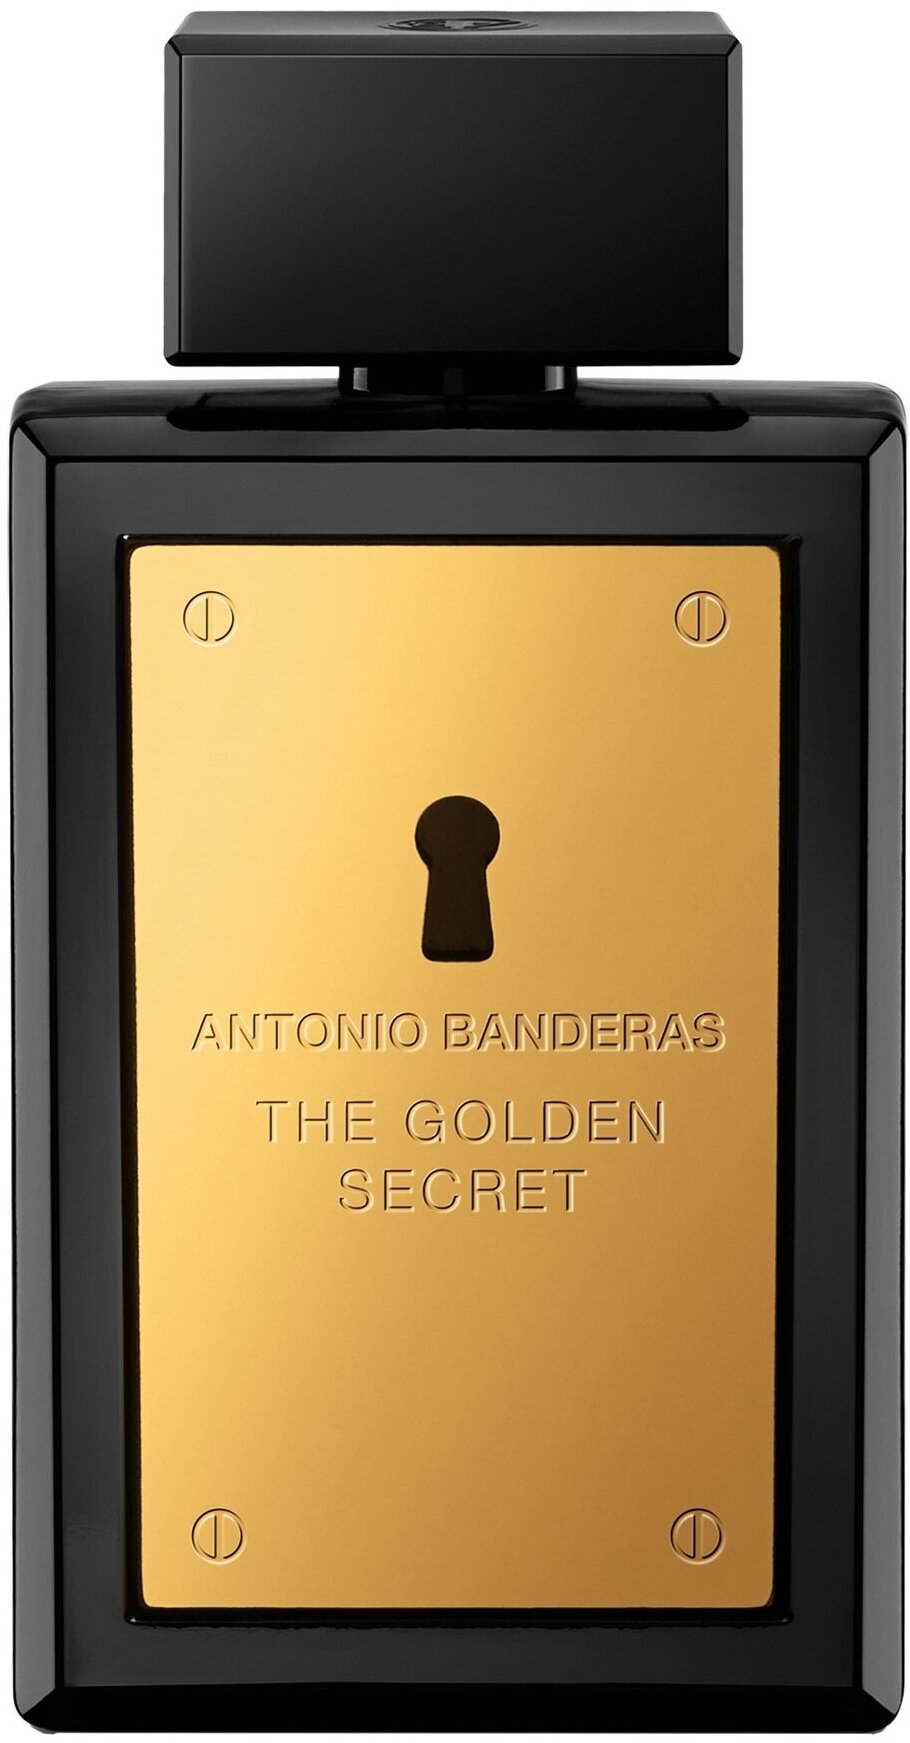 Antonio Banderas туалетная вода The Golden Secret, 100 мл